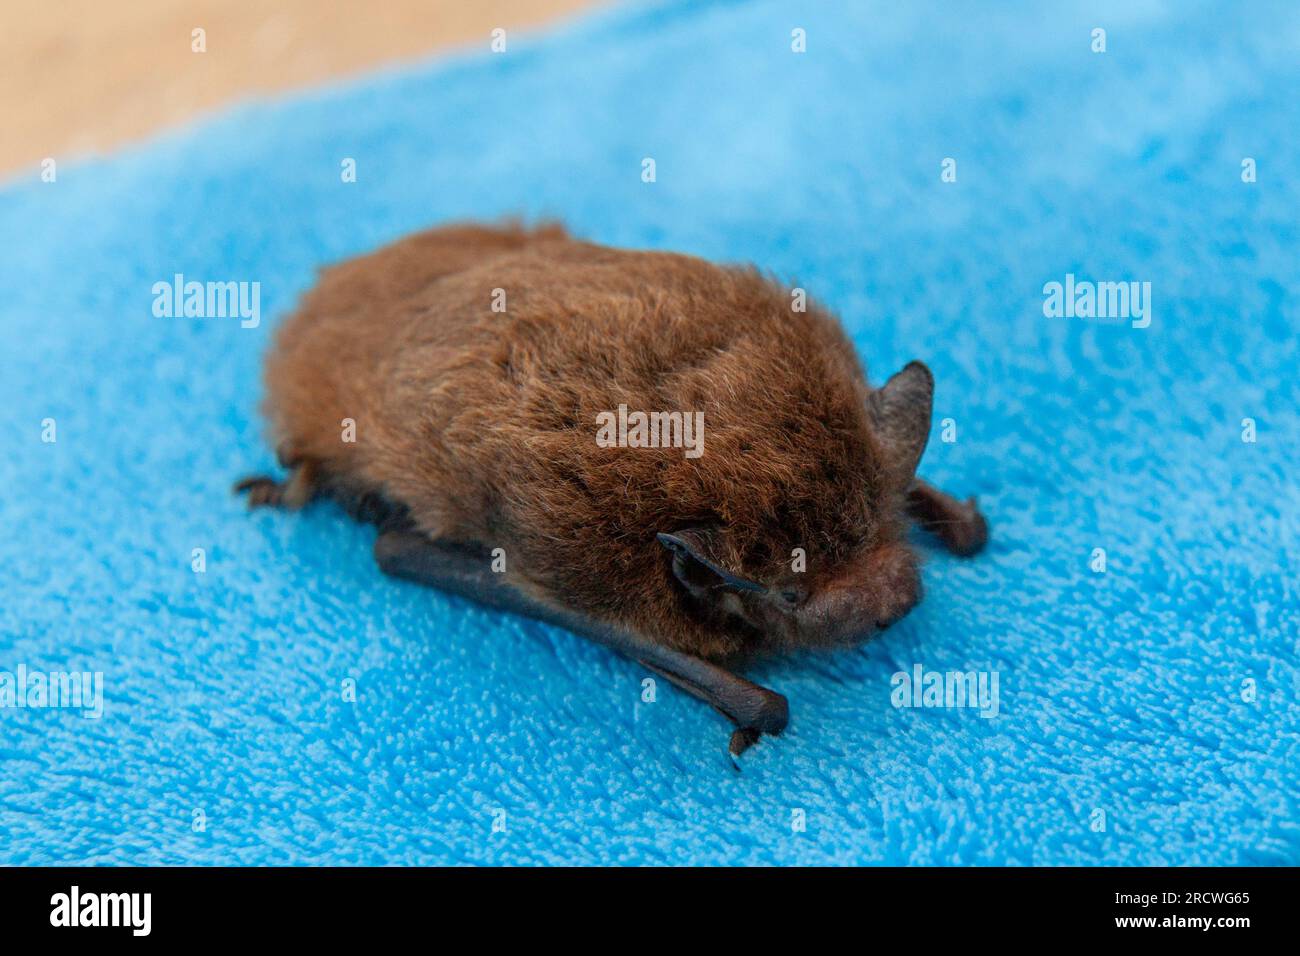 Nathusius' bat (Pipistrellus nathusii) Stock Photo